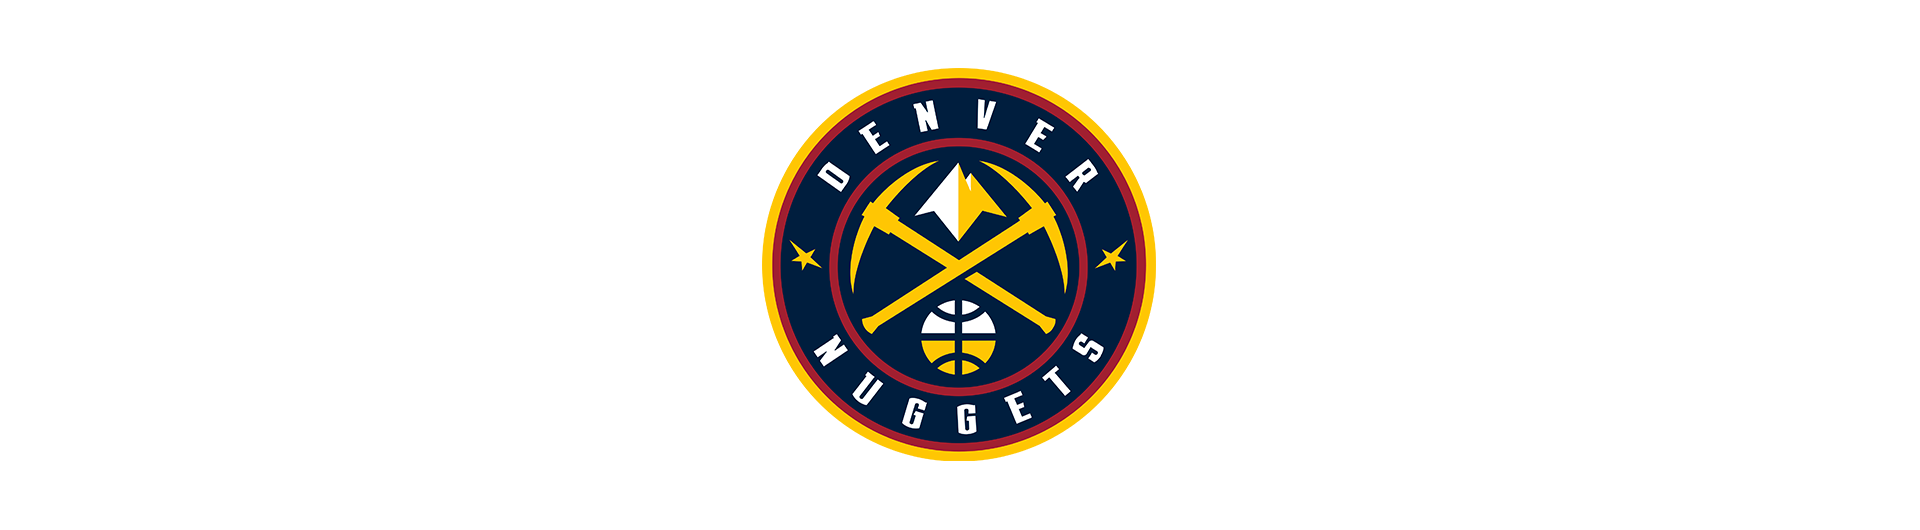 Denver Nuggets (DEN)